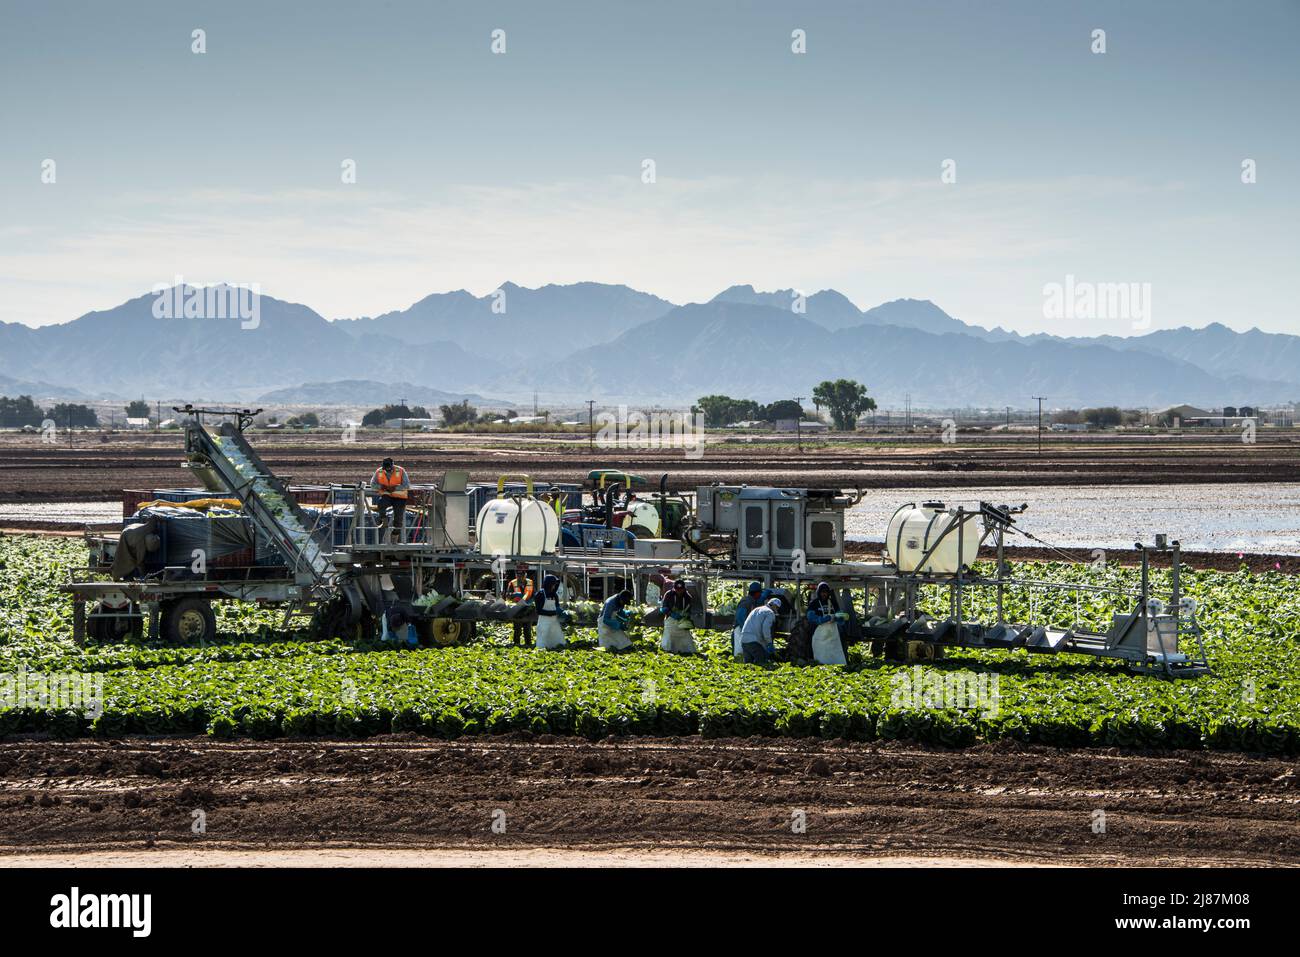 Travailleurs agricoles migrants récoltant du brocoli près de Yuma, Arizona, États-Unis. Banque D'Images